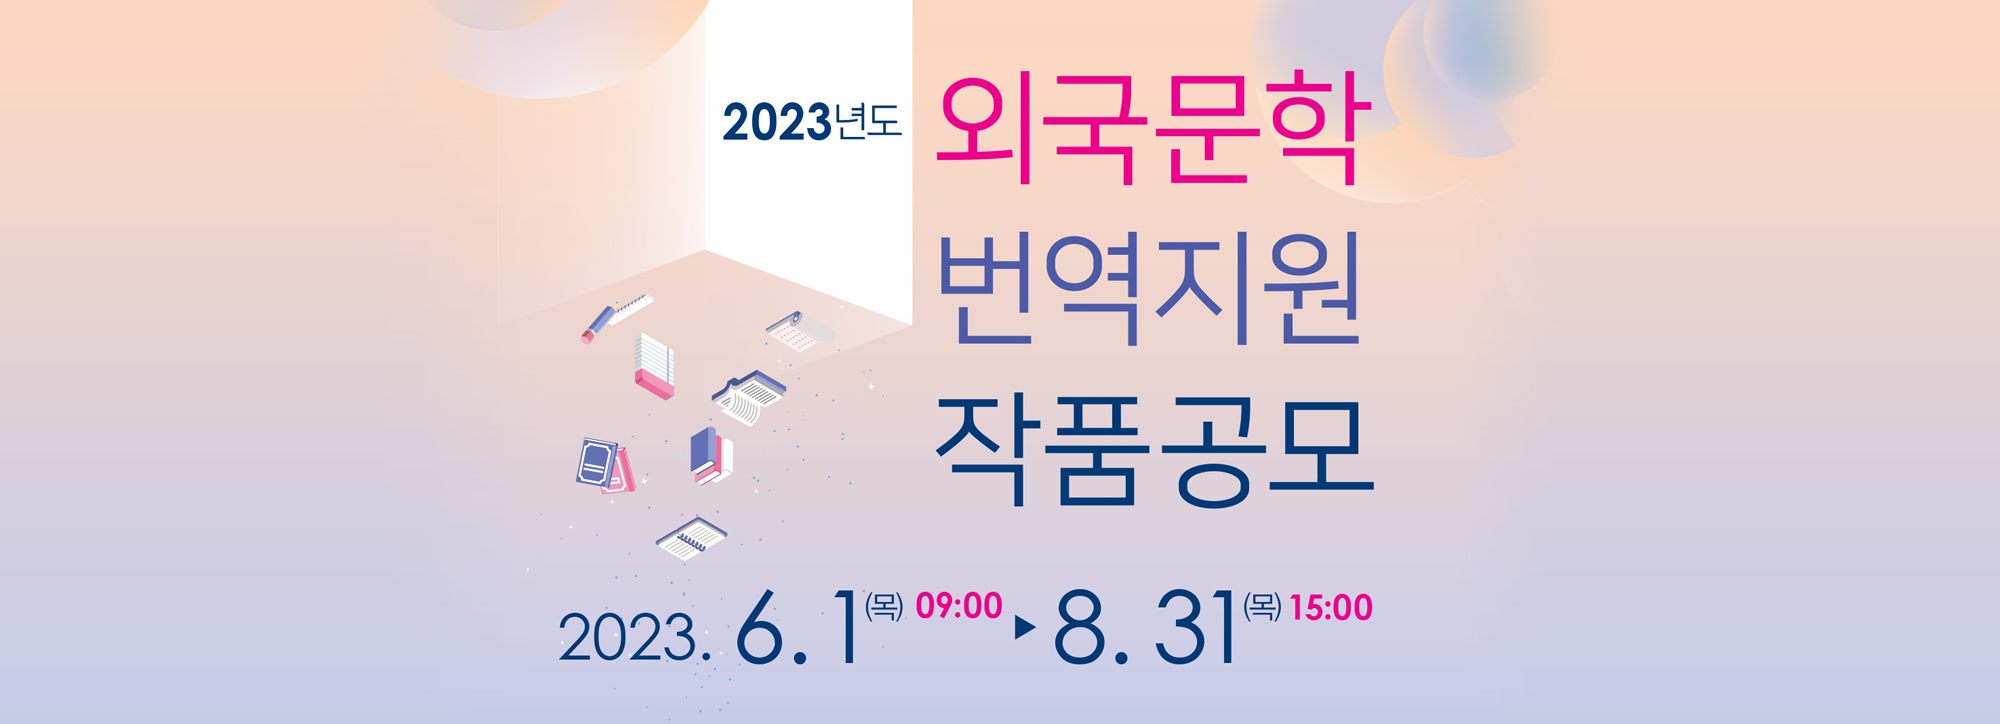 2023 외국문학 번역지원 공모 포스터